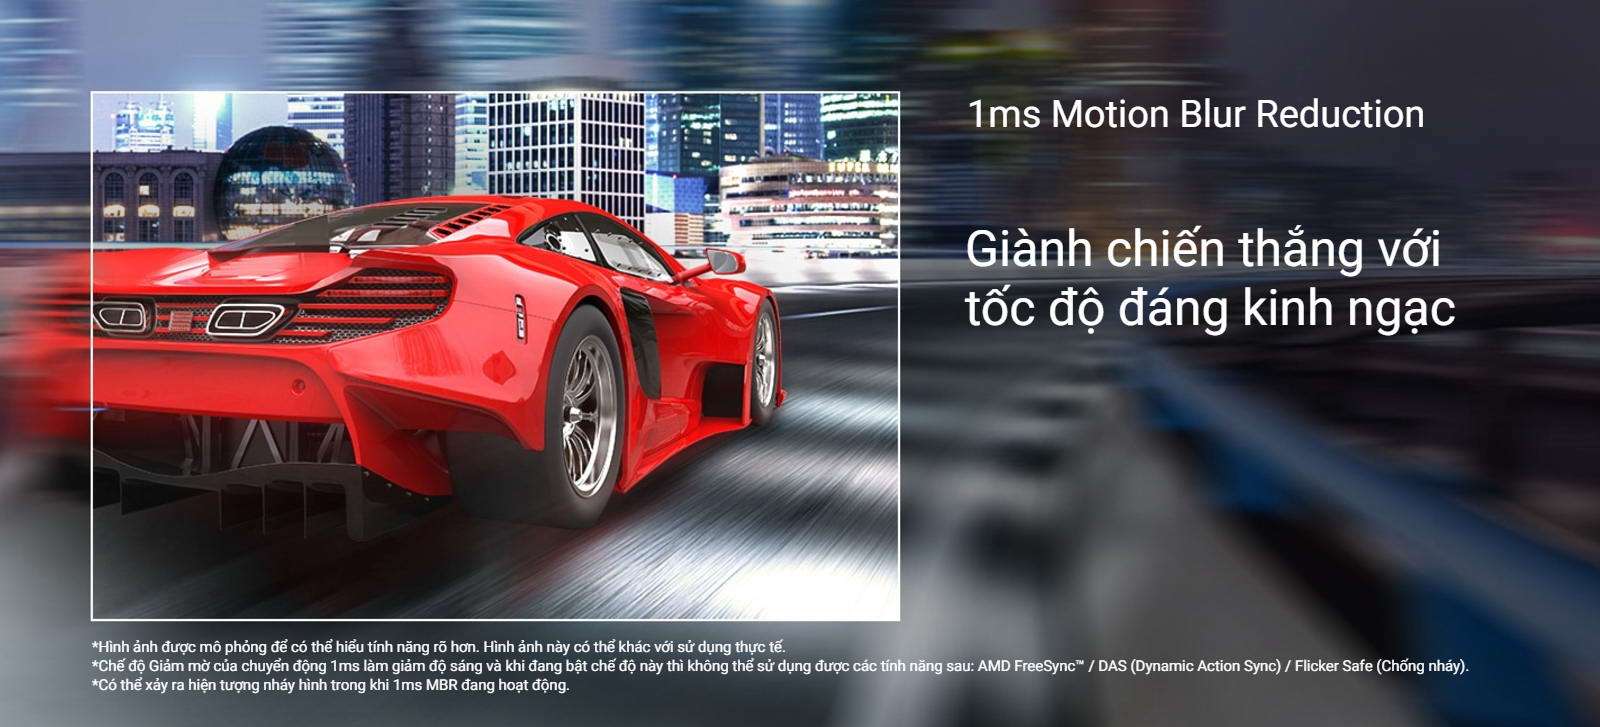 1ms Motion Blur Reduction